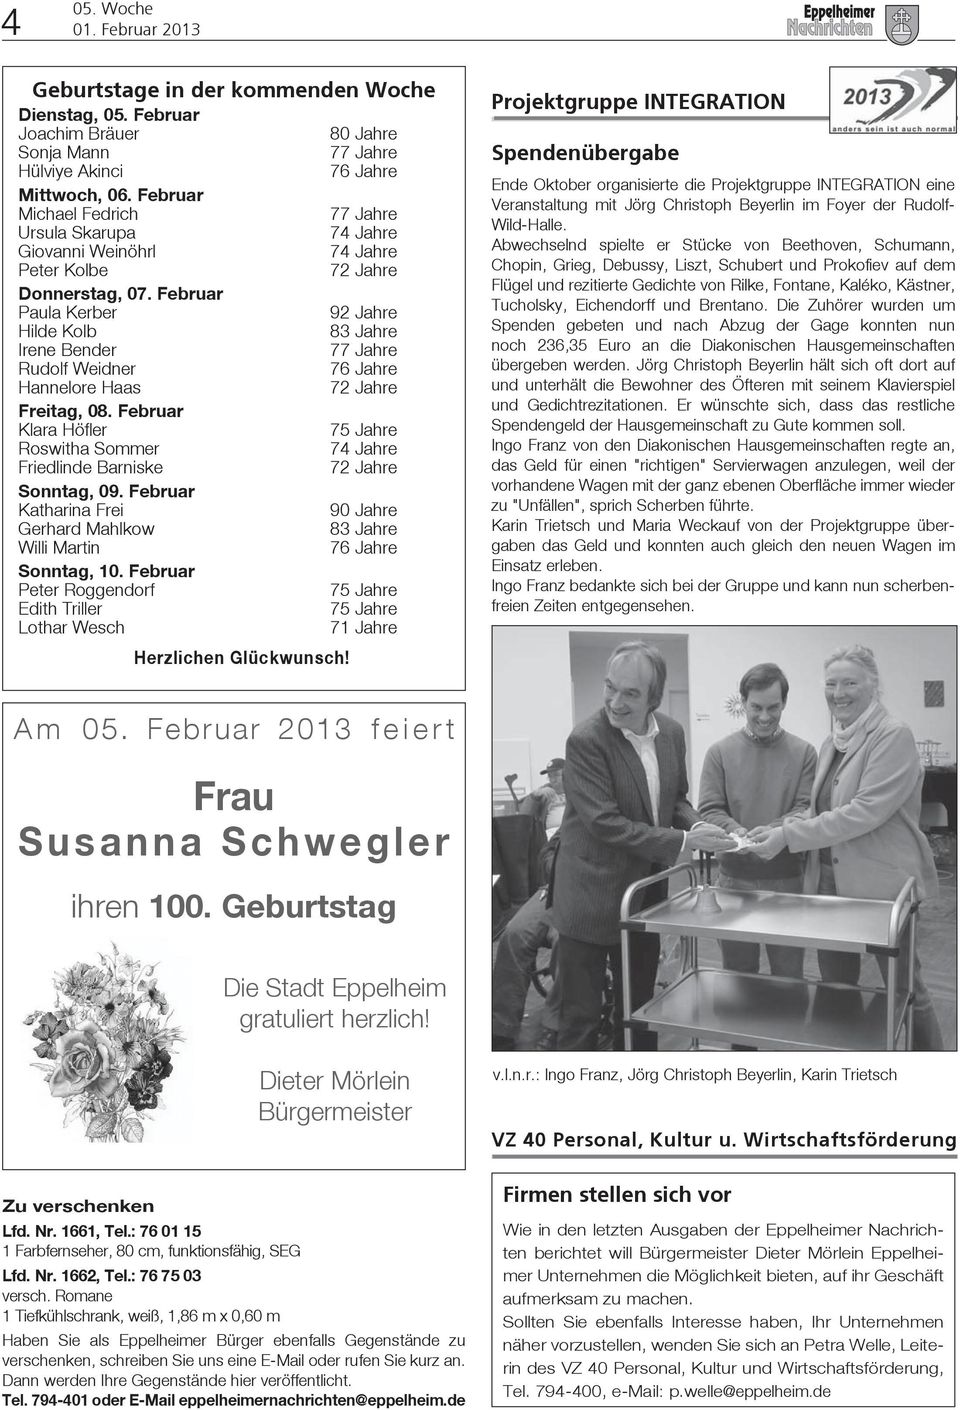 Februar Paula Kerber 92 Jahre Hilde Kolb 83 Jahre Irene Bender 77 Jahre Rudolf Weidner 76 Jahre Hannelore Haas 72 Jahre Freitag, 08.